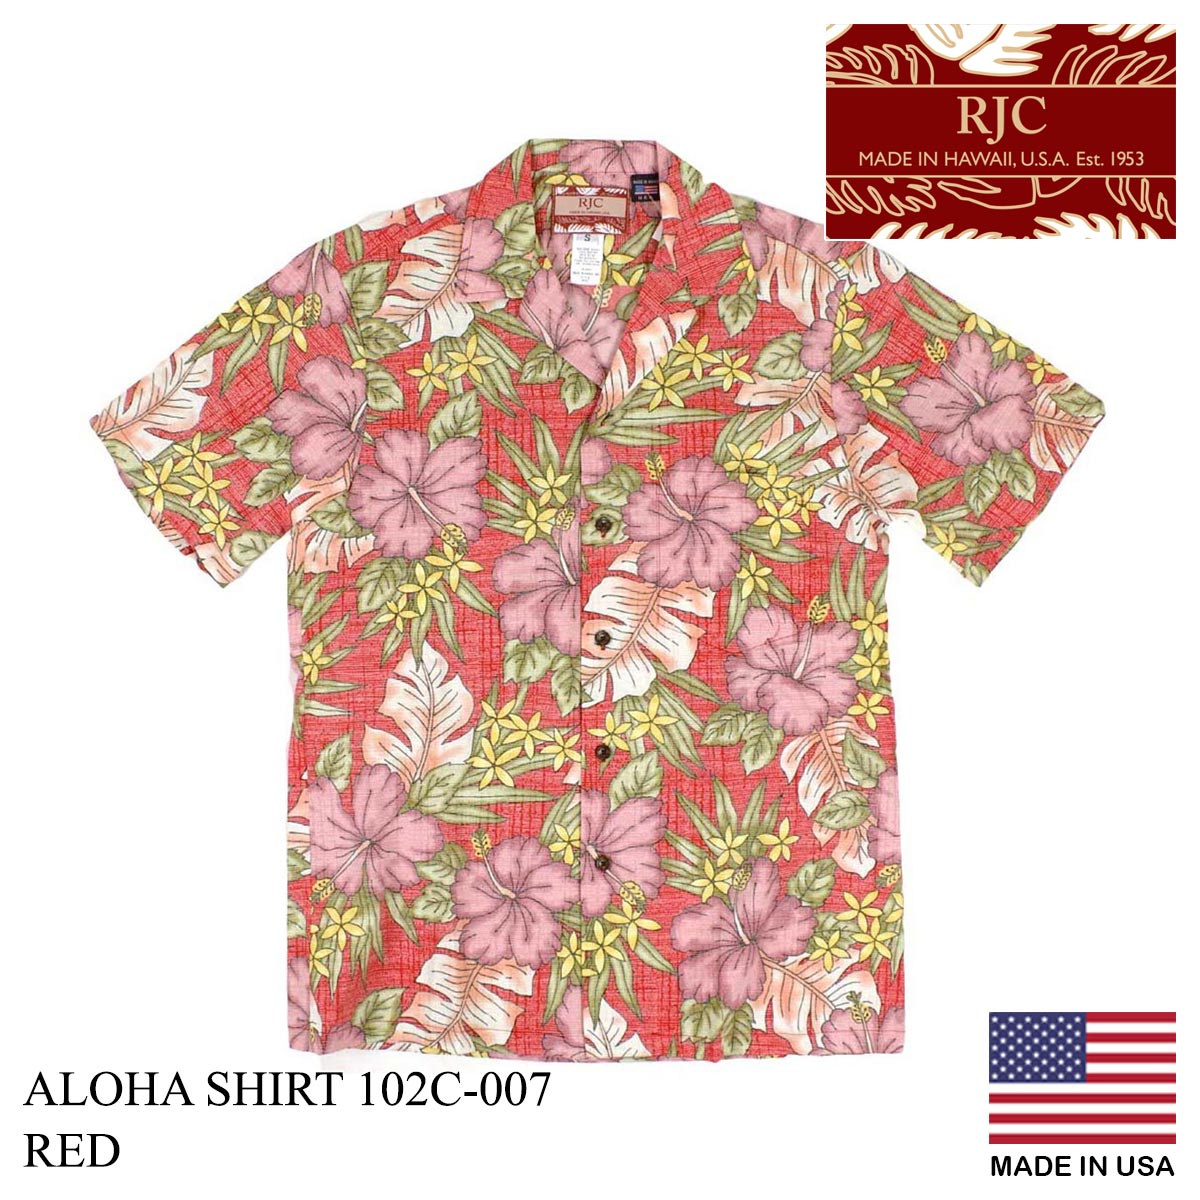 ロバートJクランシー RJC 半袖 アロハシャツ #102C-007 ハワイ製 